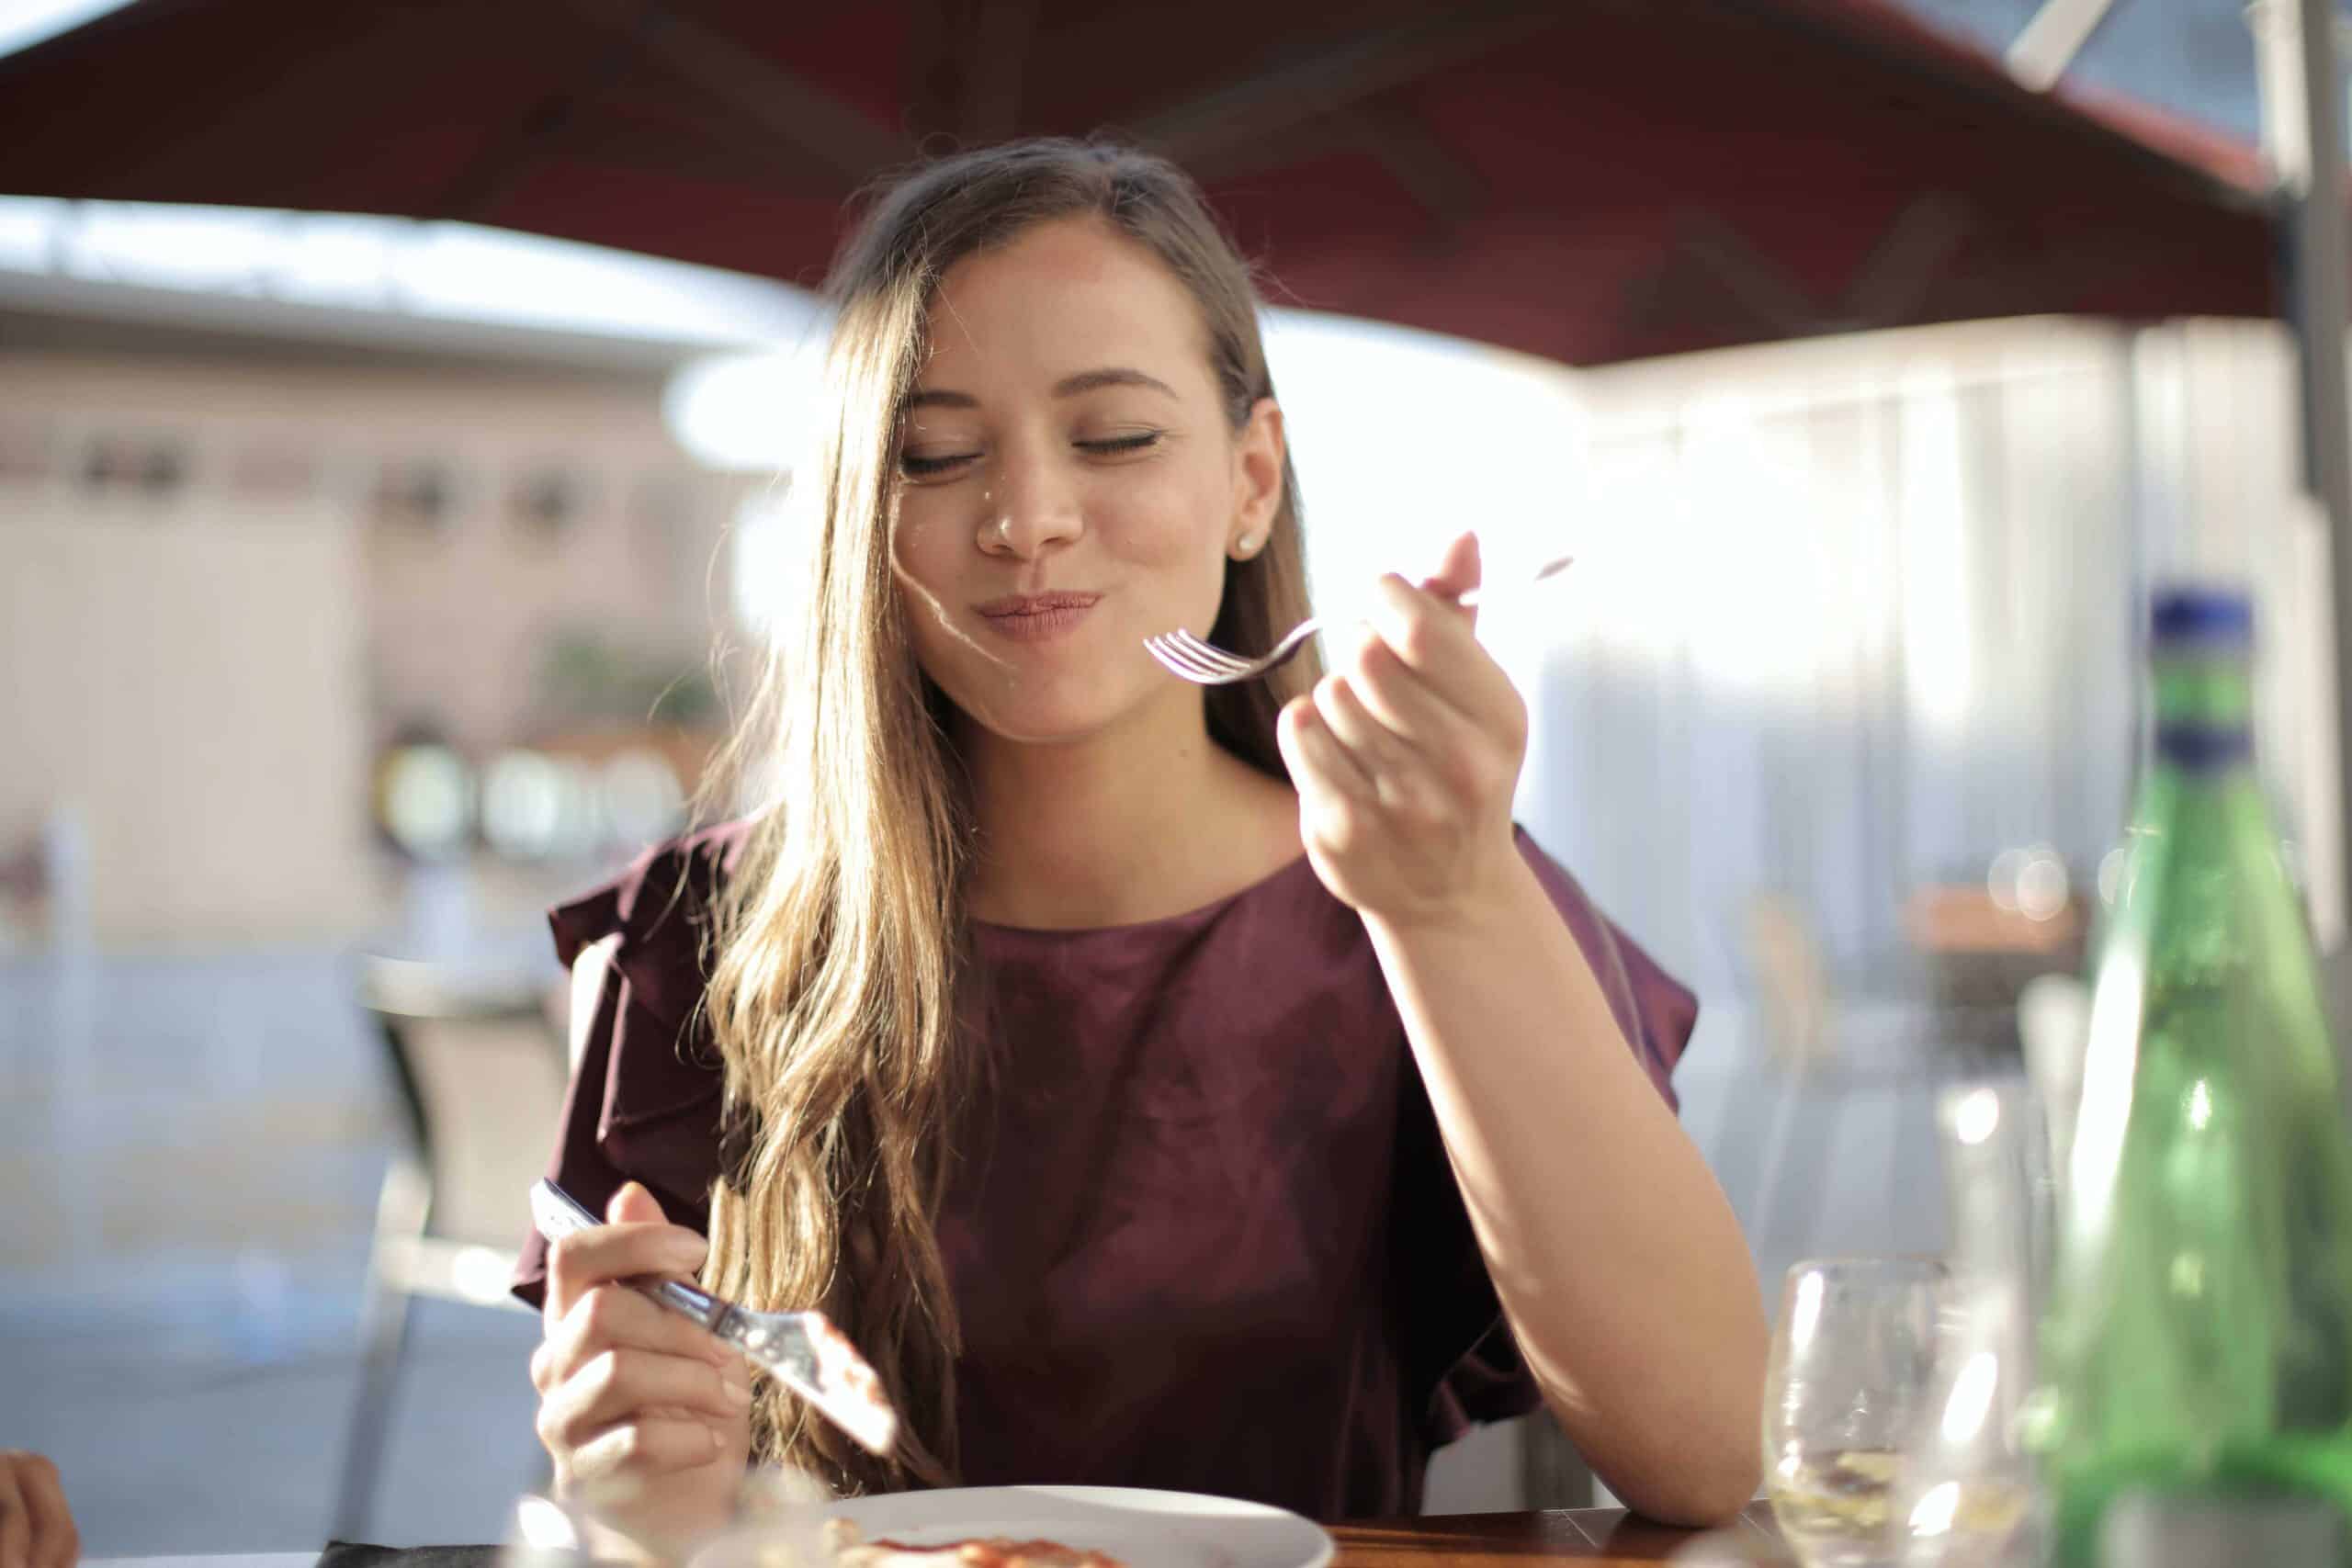 Mulher comendo e sorrindo durante uma viagem gastronômica.